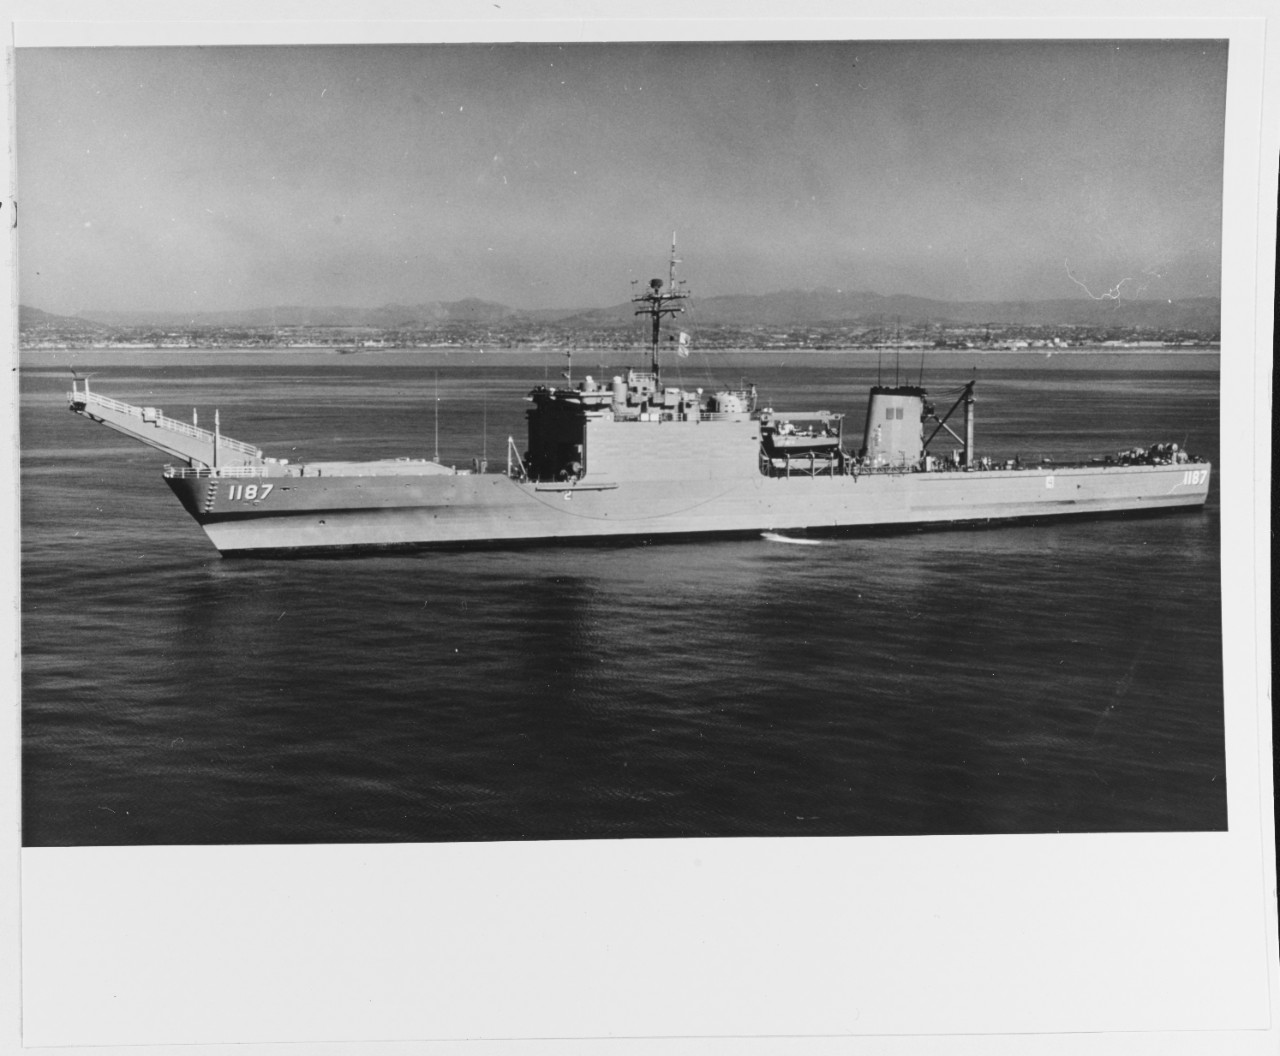 USS TUSCALOOSA (LST-1187)